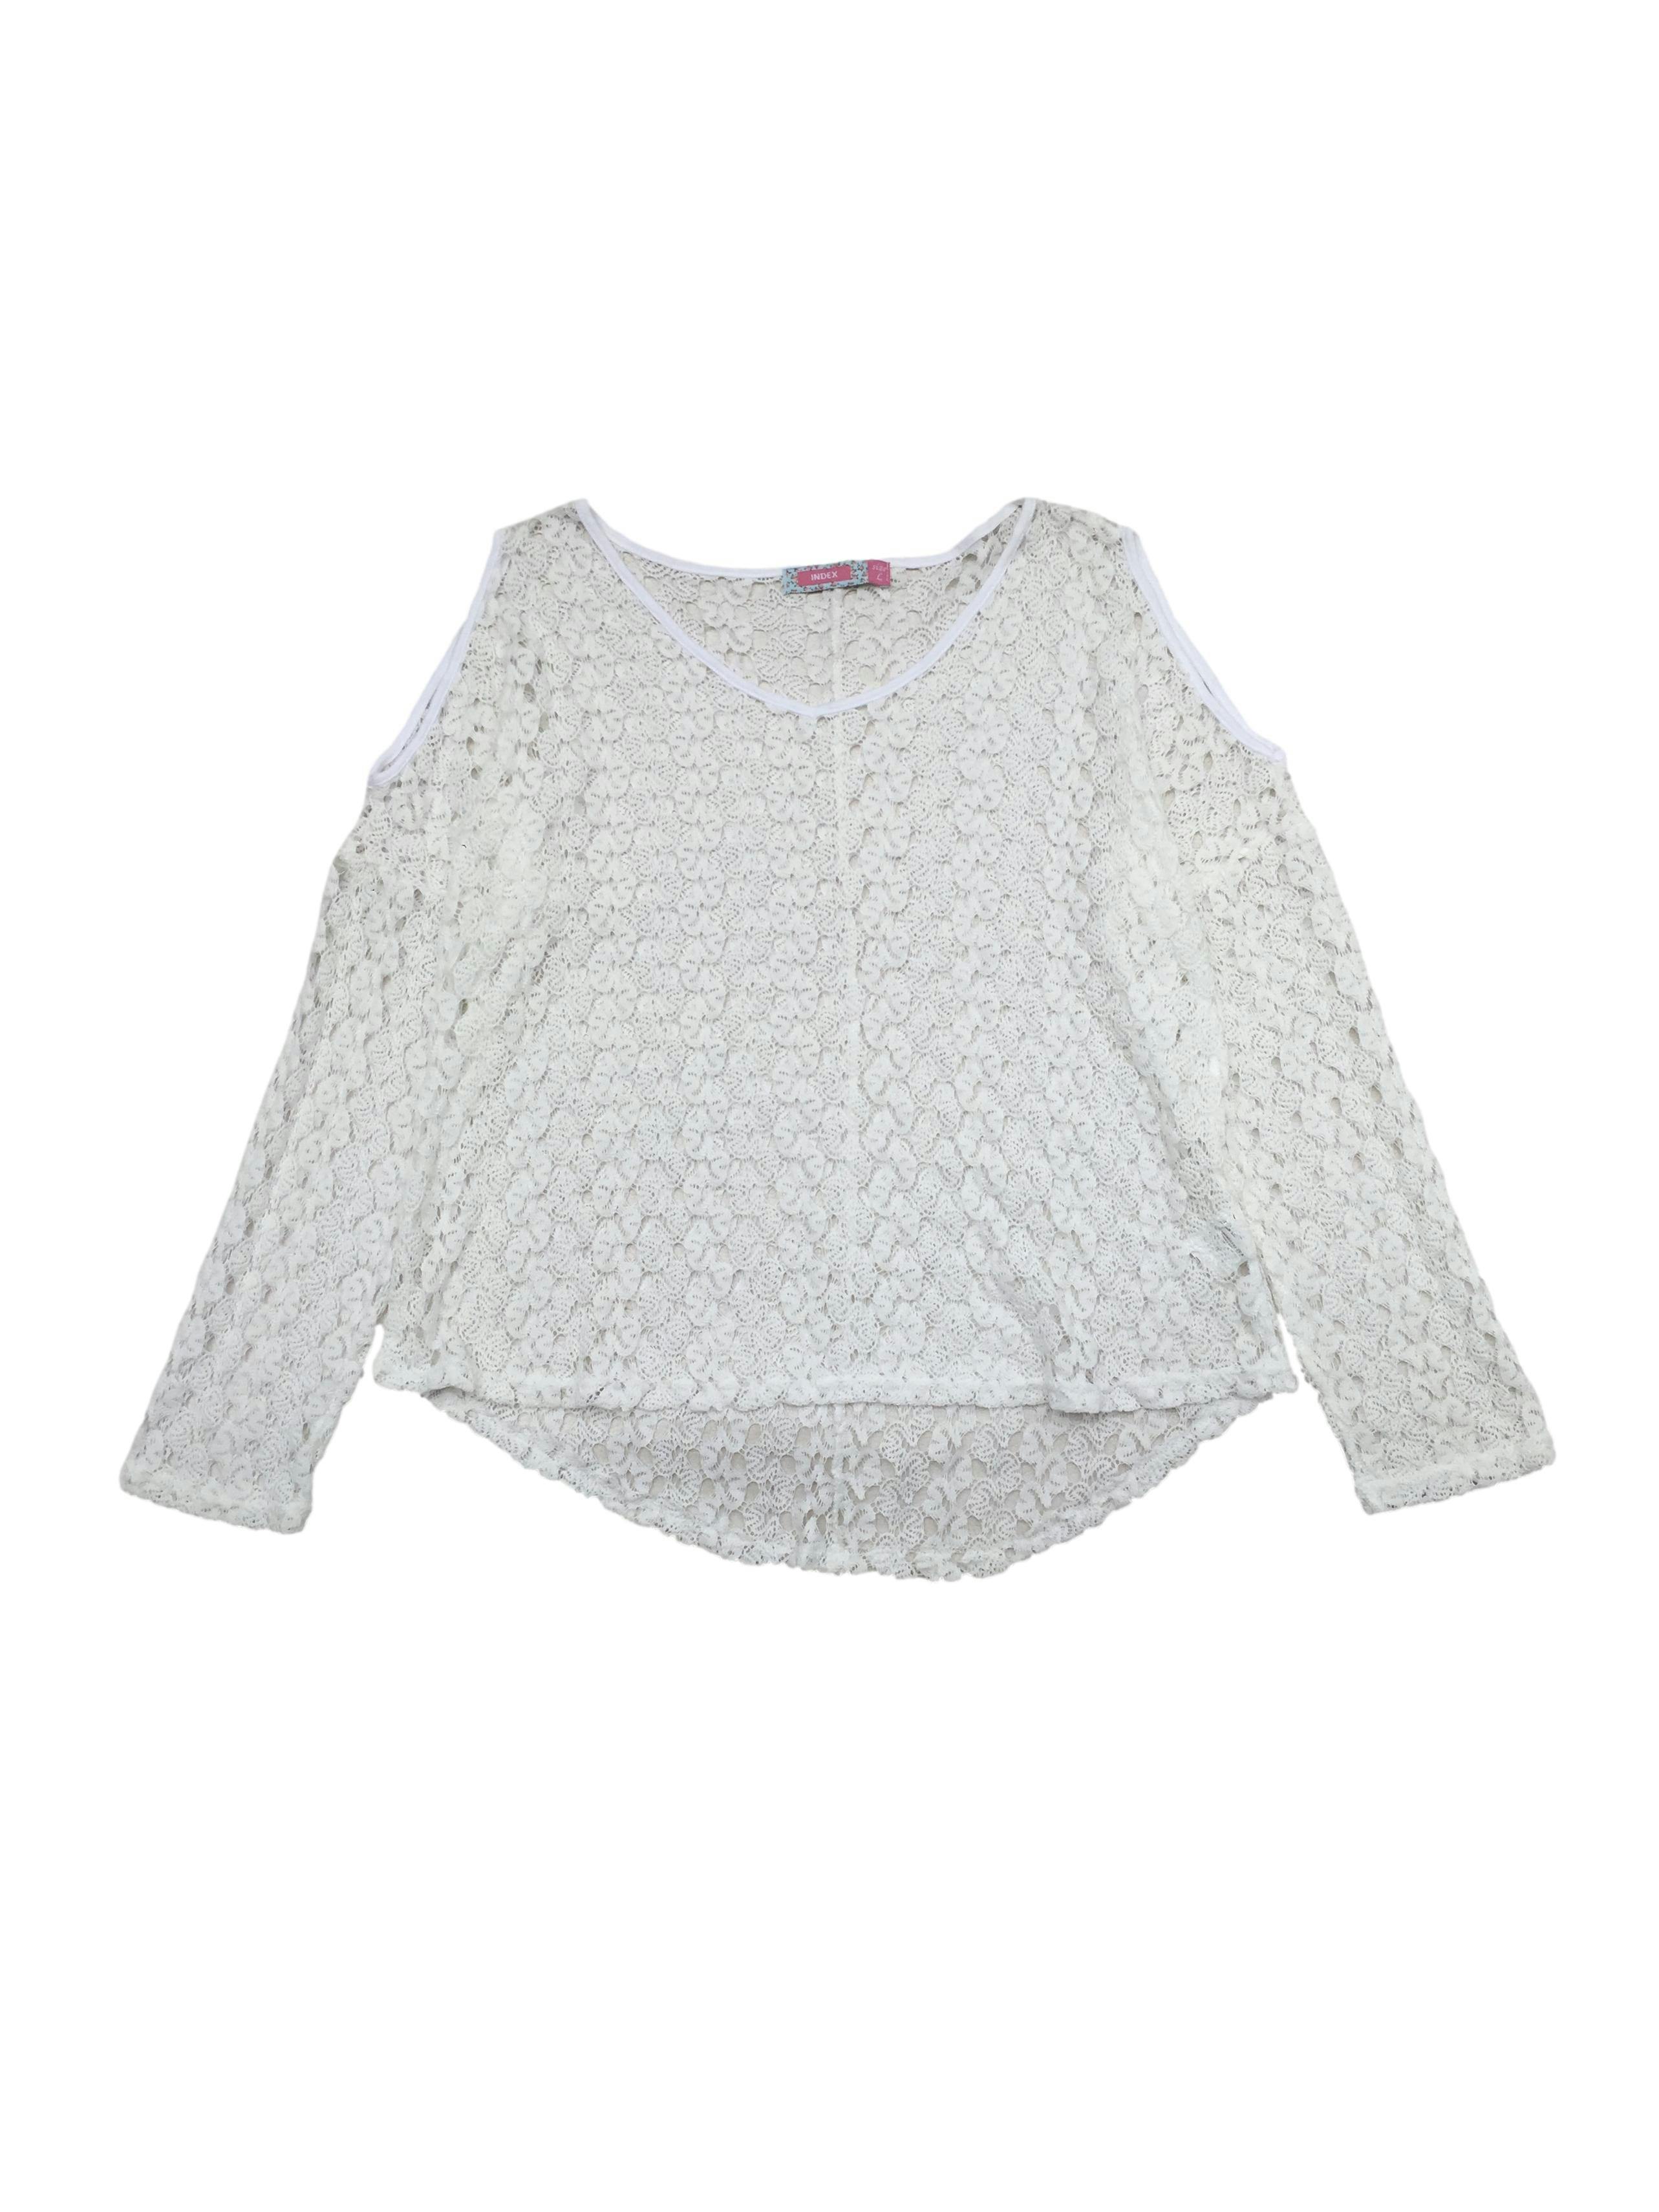 Blusa knit Index de hilo blanco, escote redondo y abertura en hombros. Busto 110cm, Largo 55cm.